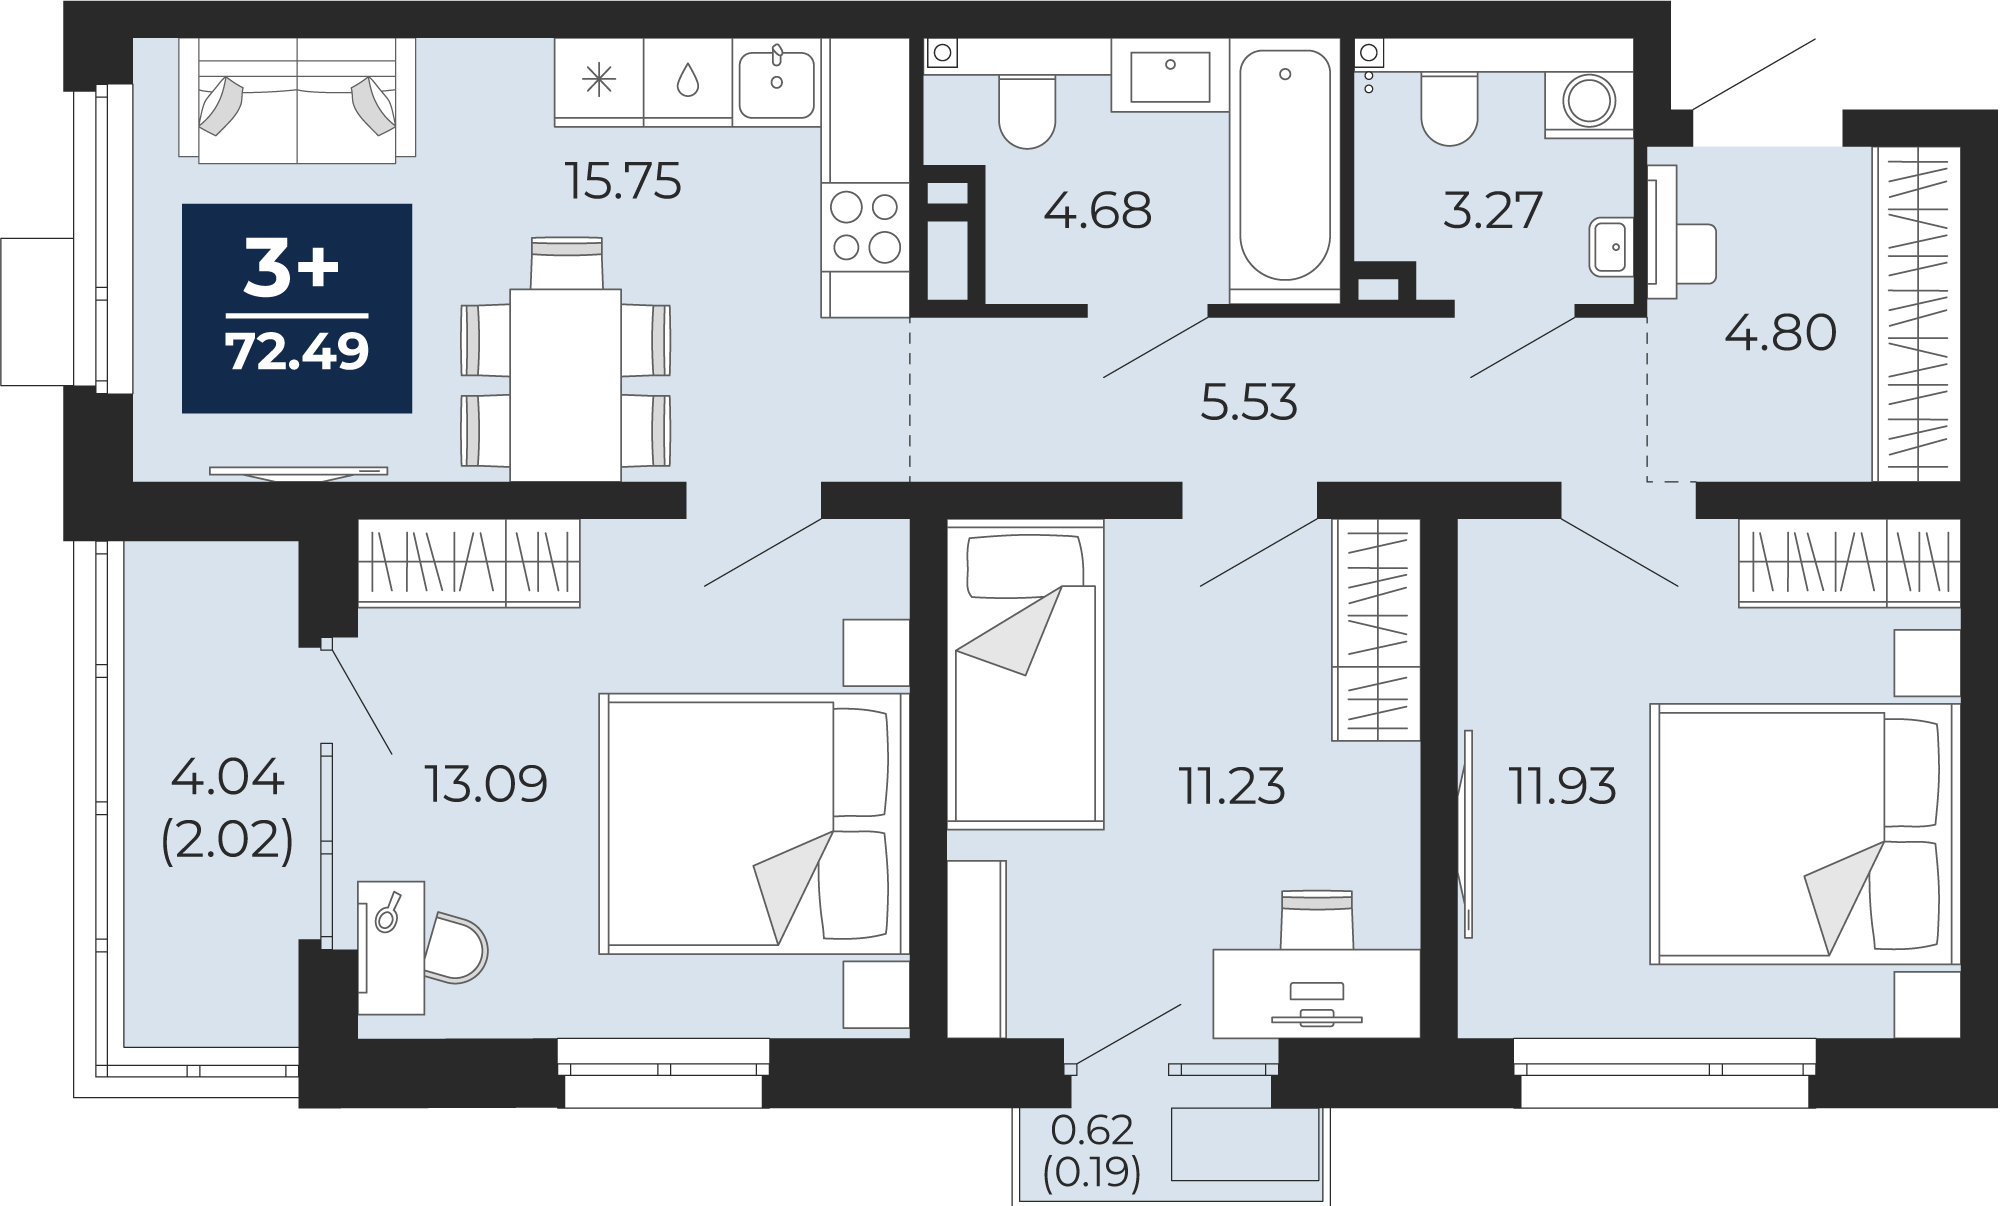 Квартира № 332, 3-комнатная, 72.49 кв. м, 2 этаж